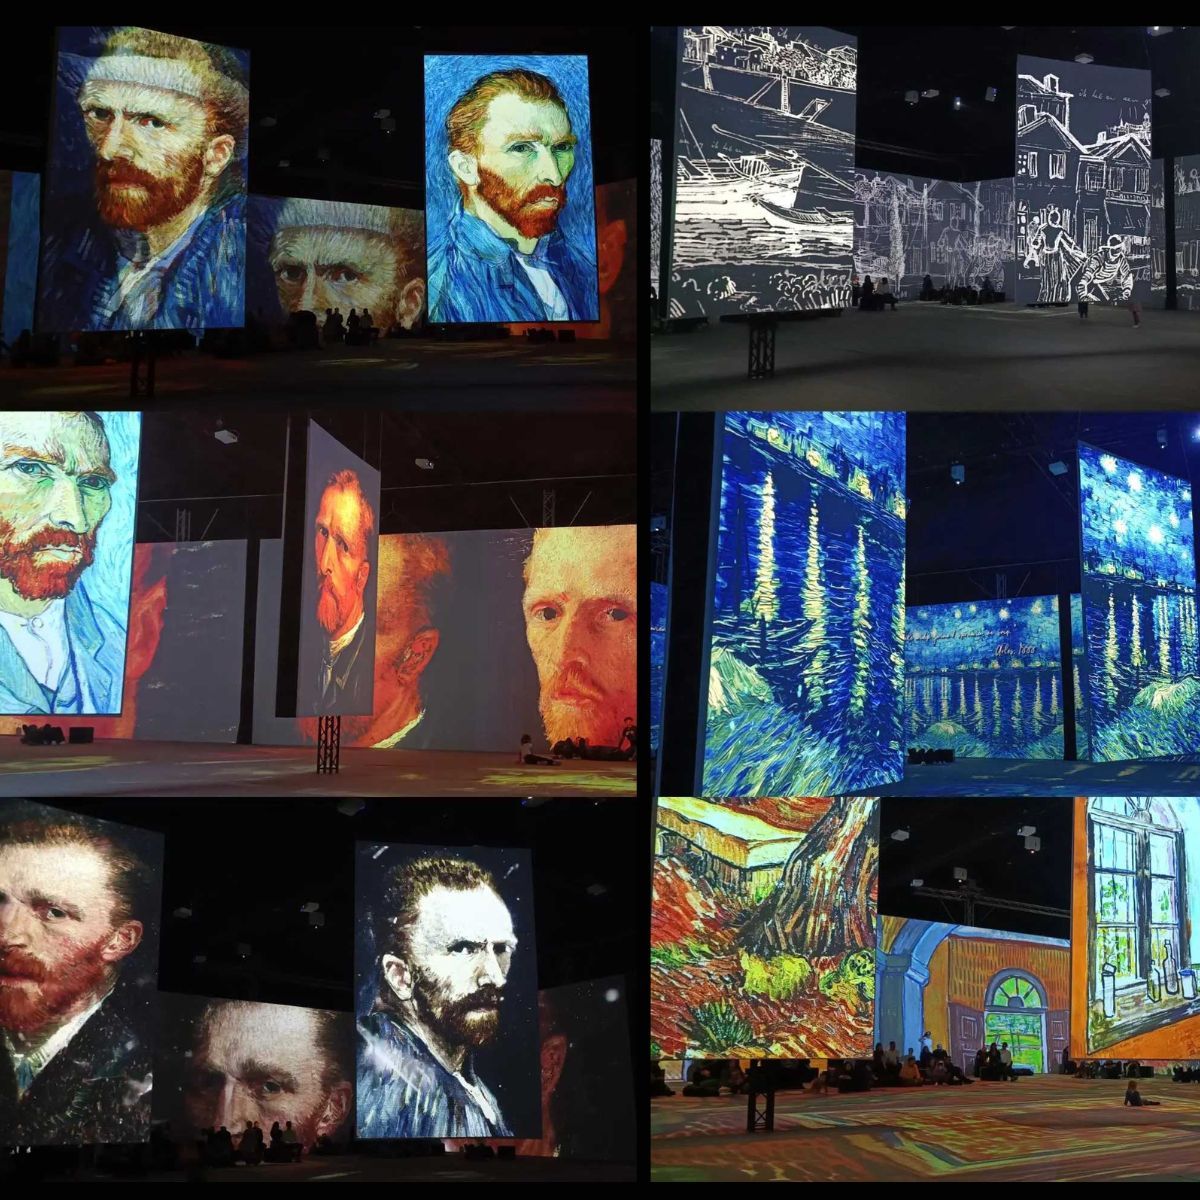 Obrazek przedstawia zestawienie kilku zdjÄ™Ä‡ prezentujÄ…cych wystawÄ™ artystycznÄ… poÅ›wiÄ™conÄ… Vincentowi van Gogh. ZdjÄ™cia ukazujÄ… wielkie ekrany projekcyjne, na ktÃ³rych wyÅ›wietlane sÄ… ikoniczne prace tego artysty.

Na lewym gÃ³rnym zdjÄ™ciu widzimy trzy wielkie ekrany, na ktÃ³rych wyÅ›wietlane sÄ… rÃ³Å¼ne wersje autoportretu Vincenta van Gogha w charakterystycznym niebieskim kapeluszu.

Na gÃ³rnym Å›rodkowym zdjÄ™ciu ukazane jest zbliÅ¼enie na jeden z autoportretÃ³w artysty.

GÃ³rne prawe zdjÄ™cie przedstawia czarno-biaÅ‚Ä… grafikÄ™ przedstawiajÄ…cÄ… pejzaÅ¼ miejski z budynkami i Å‚odziÄ… na rzece.

Åšrodkowe lewe zdjÄ™cie pokazuje ekrany z rÃ³Å¼nymi autoportretami van Gogha ukazujÄ…cymi artystÄ™ w rÃ³Å¼nych ekspresjach.

Na Å›rodkowym zdjÄ™ciu z prawej strony widzimy sÅ‚ynne "GwiaÅºdzistÄ… noc" â€“ pejzaÅ¼ z krÄ™cÄ…cymi siÄ™ gwiazdami i cyprysem na pierwszym planie.

Na dolnym lewym zdjÄ™ciu sÄ… ponownie rÃ³Å¼ne autoportrety artysty, tym razem w ciemniejszych tonacjach.

Dolne Å›rodkowe zdjÄ™cie to kolejny autoportret van Gogha na duÅ¼ym ekranie.

Na dolnym prawym zdjÄ™ciu ukazany jest inny obraz van Gogha przedstawiajÄ…cy wnÄ™trze pokoju z otwartym oknem i czerwonymi cegÅ‚ami na podÅ‚odze.

Na niektÃ³rych zdjÄ™ciach moÅ¼na dostrzec sylwetki ludzi, co daje nam poczucie skali i wielkoÅ›ci tych projekcji. CaÅ‚oÅ›Ä‡ prezentuje siÄ™ jako nowoczesna i interaktywna forma prezentacji dzieÅ‚ sztuki.